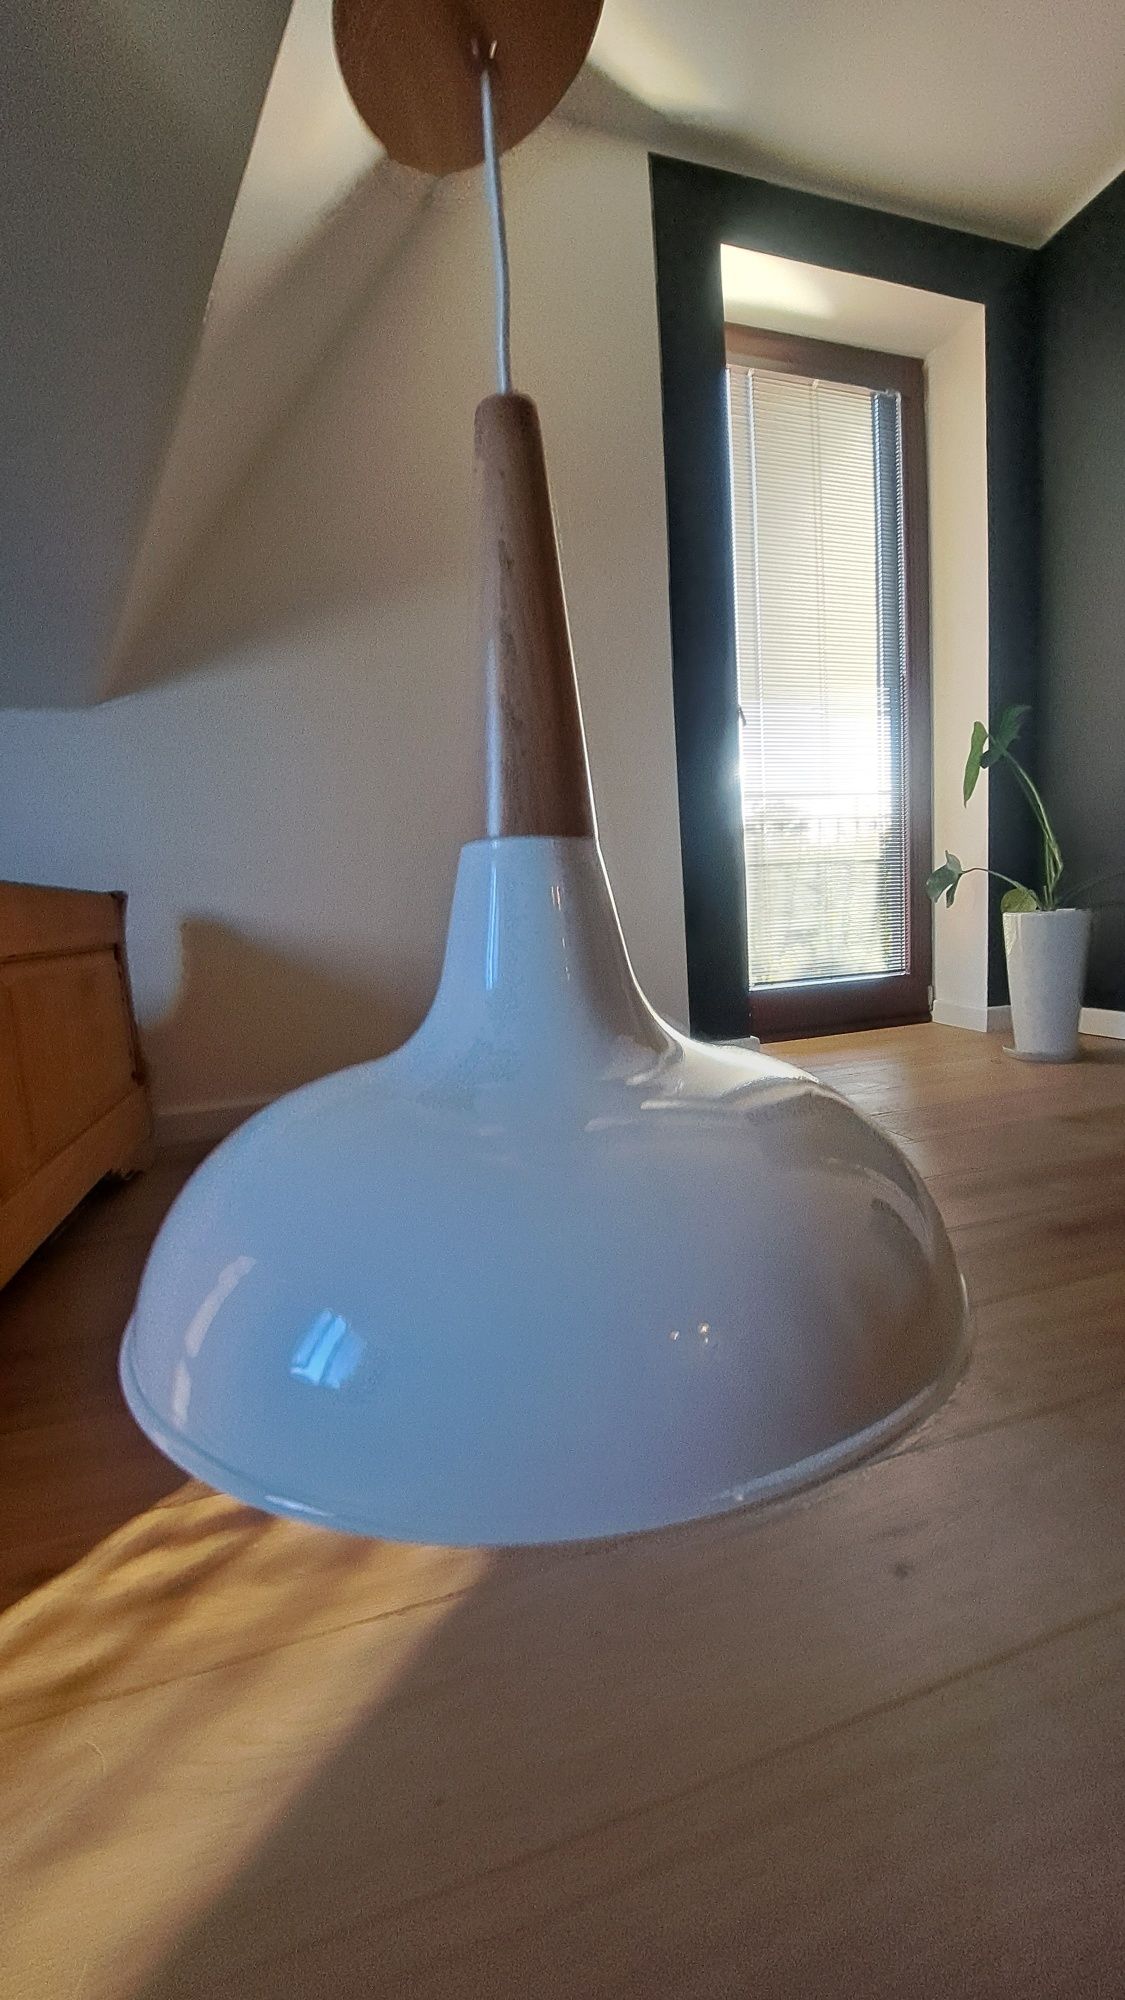 Lampa w stylu skandynawskim